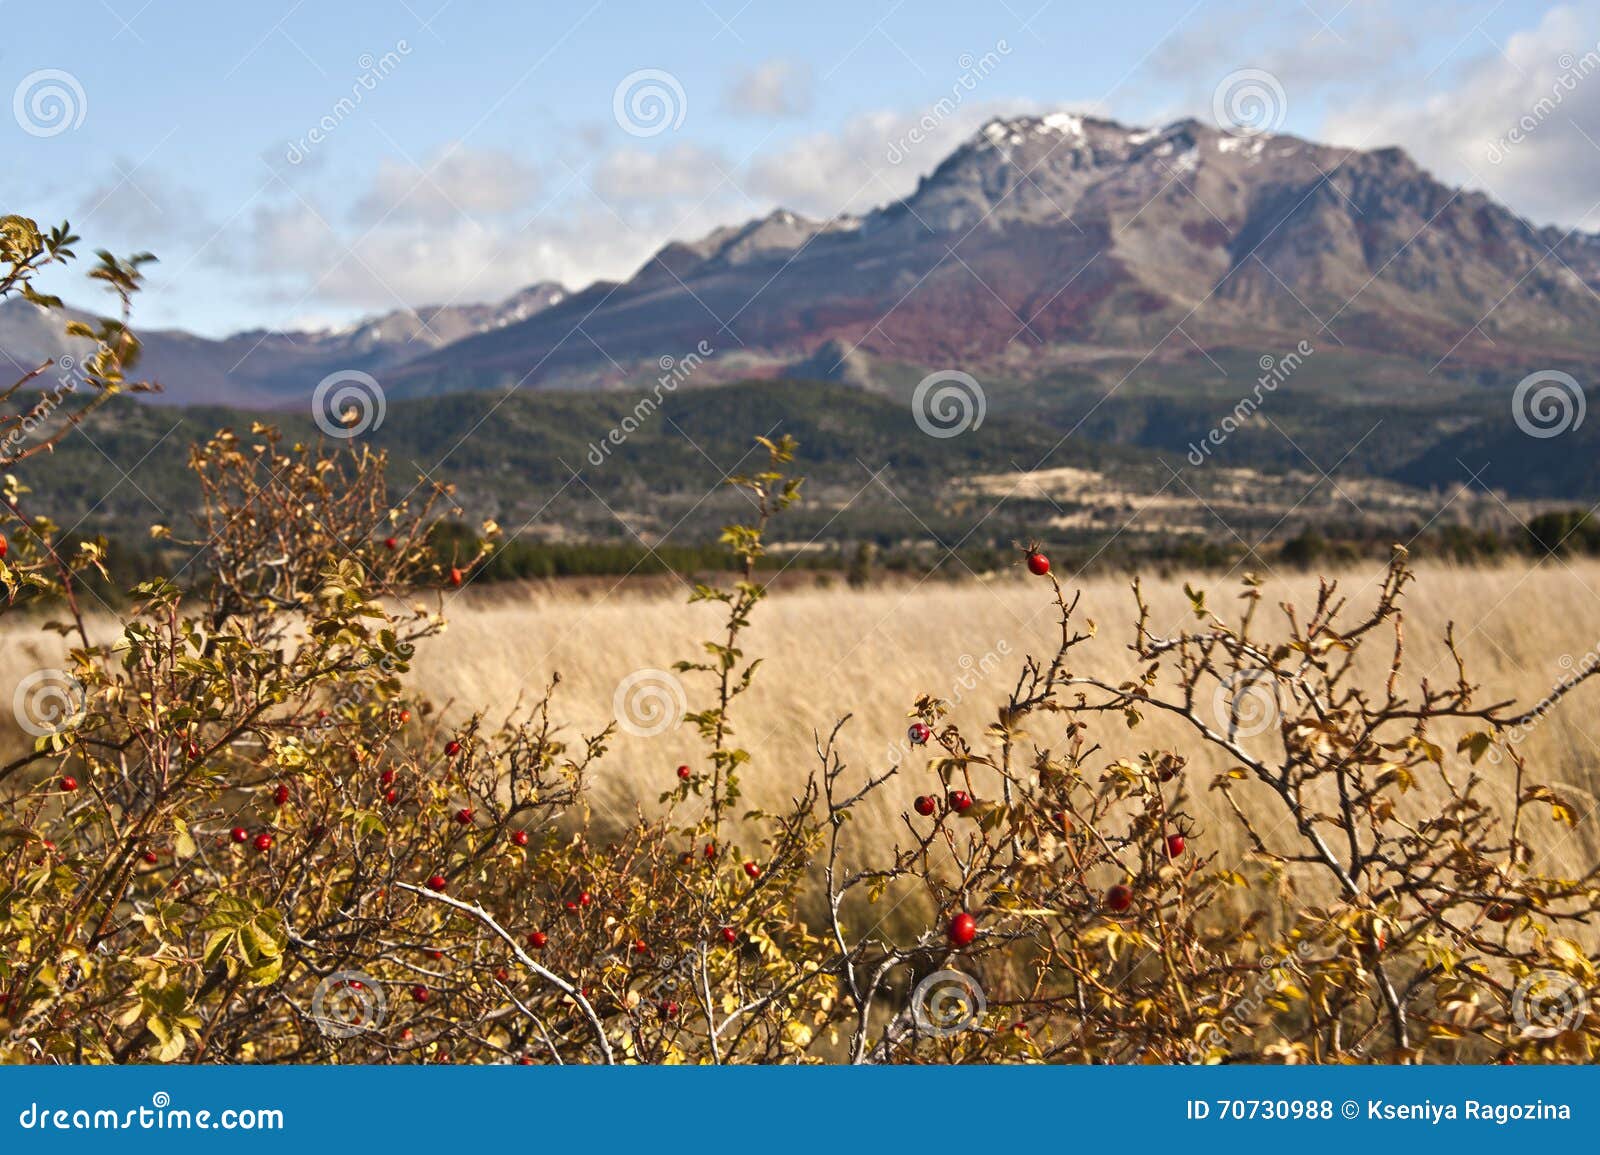 autumn colors in el boliche, bariloche, argentina